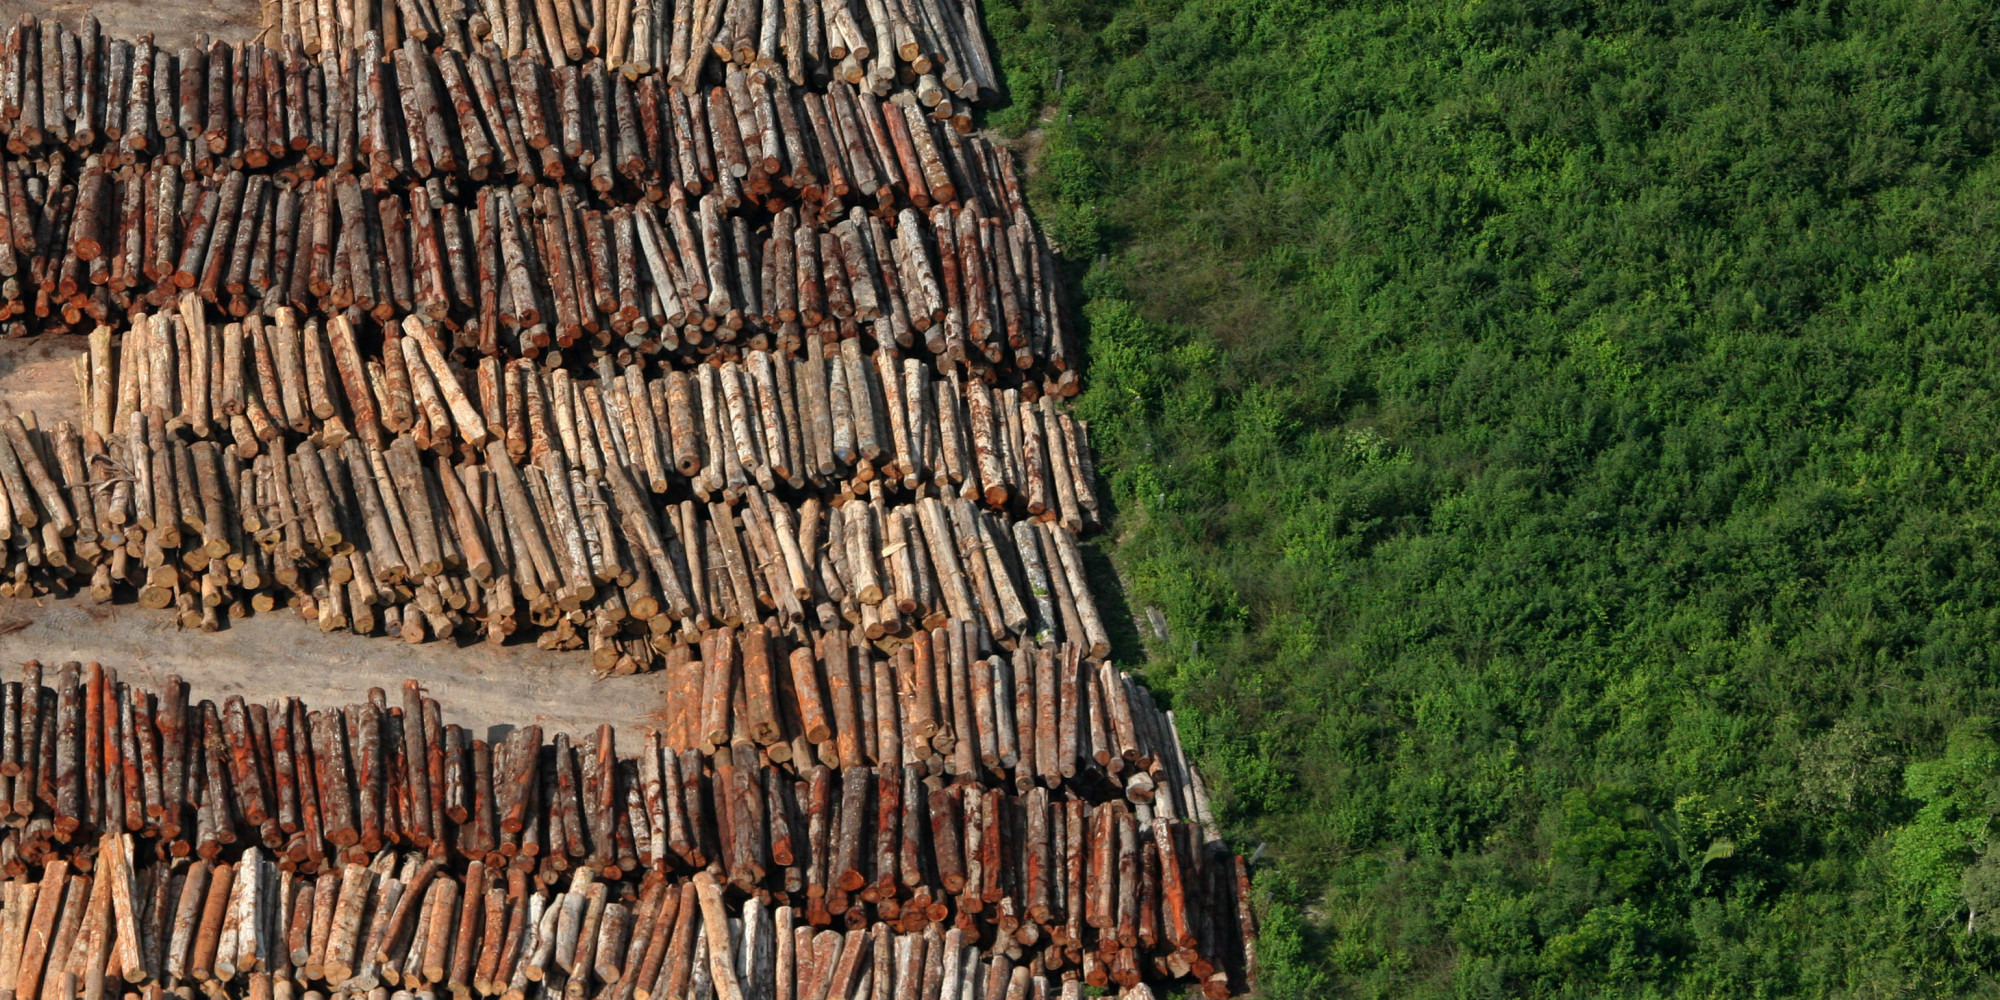 Conheça Colniza, o município que mais desmata no Brasil